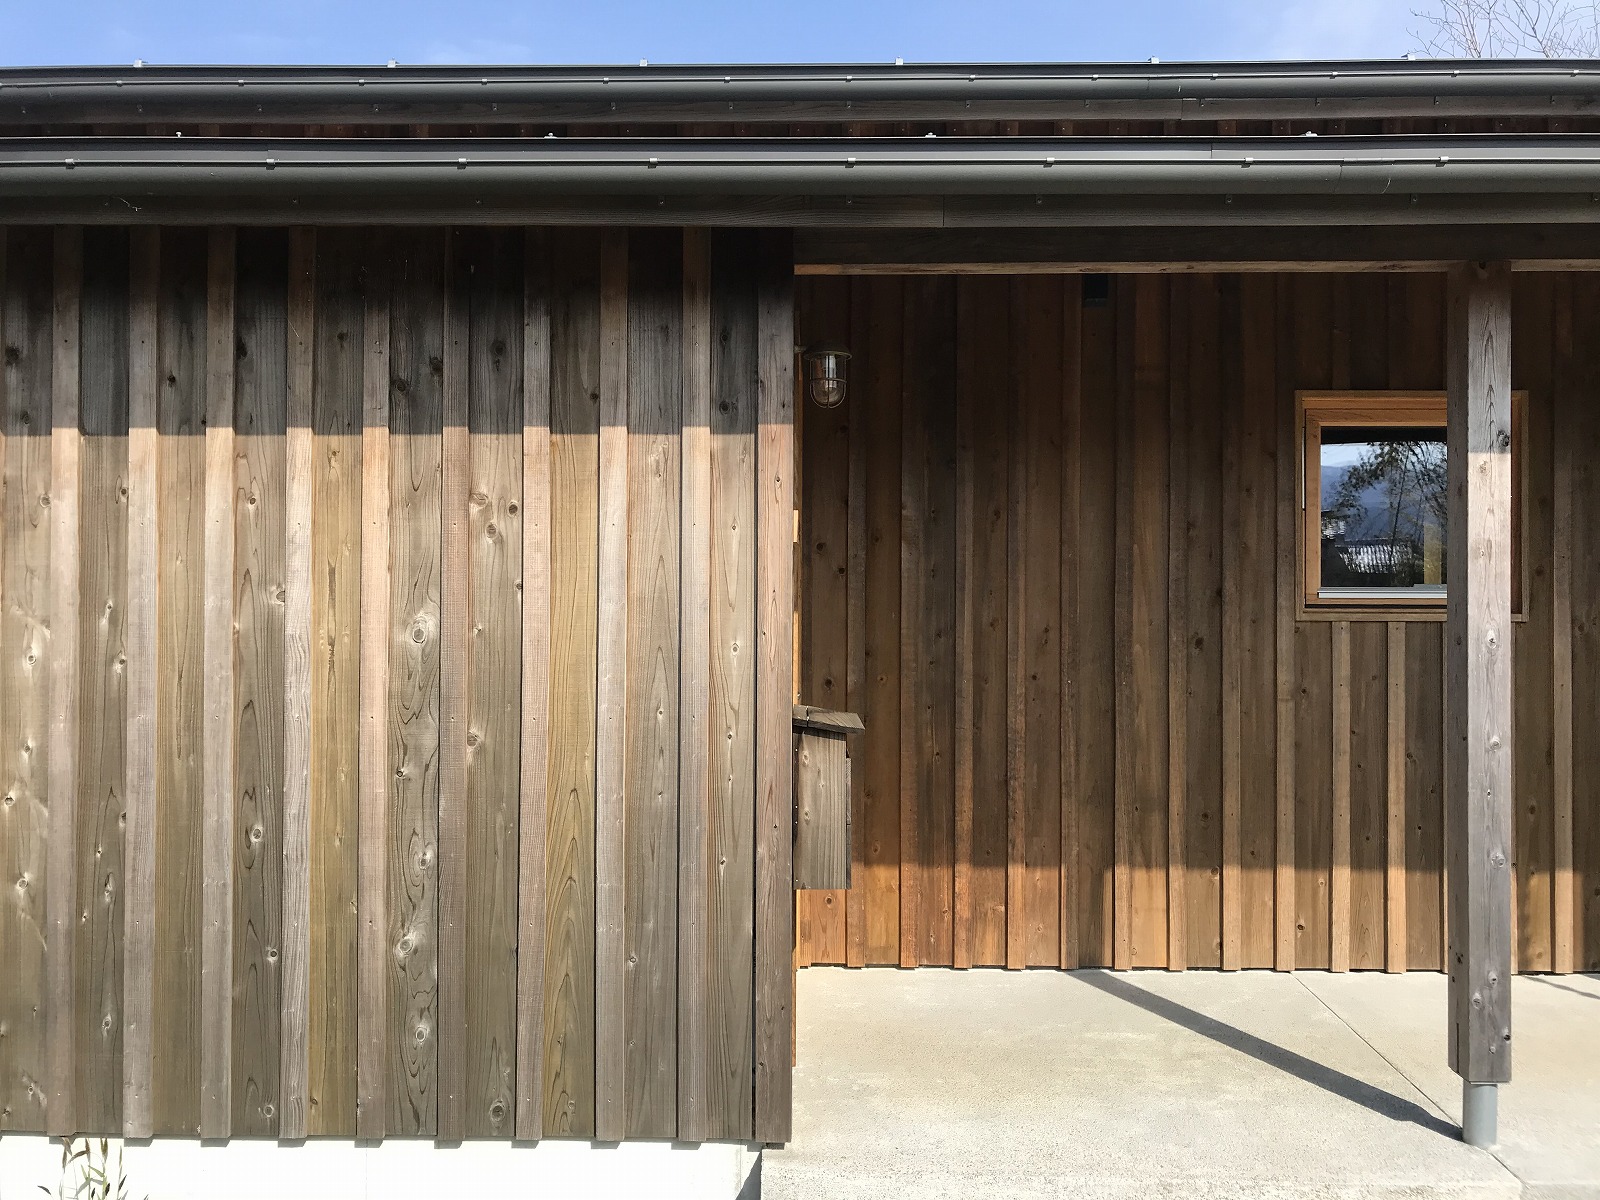 中野のエスネル 04 ｎ杉外壁 張り方のバリエーション ルーバー張り 住宅設計エスネルデザイン